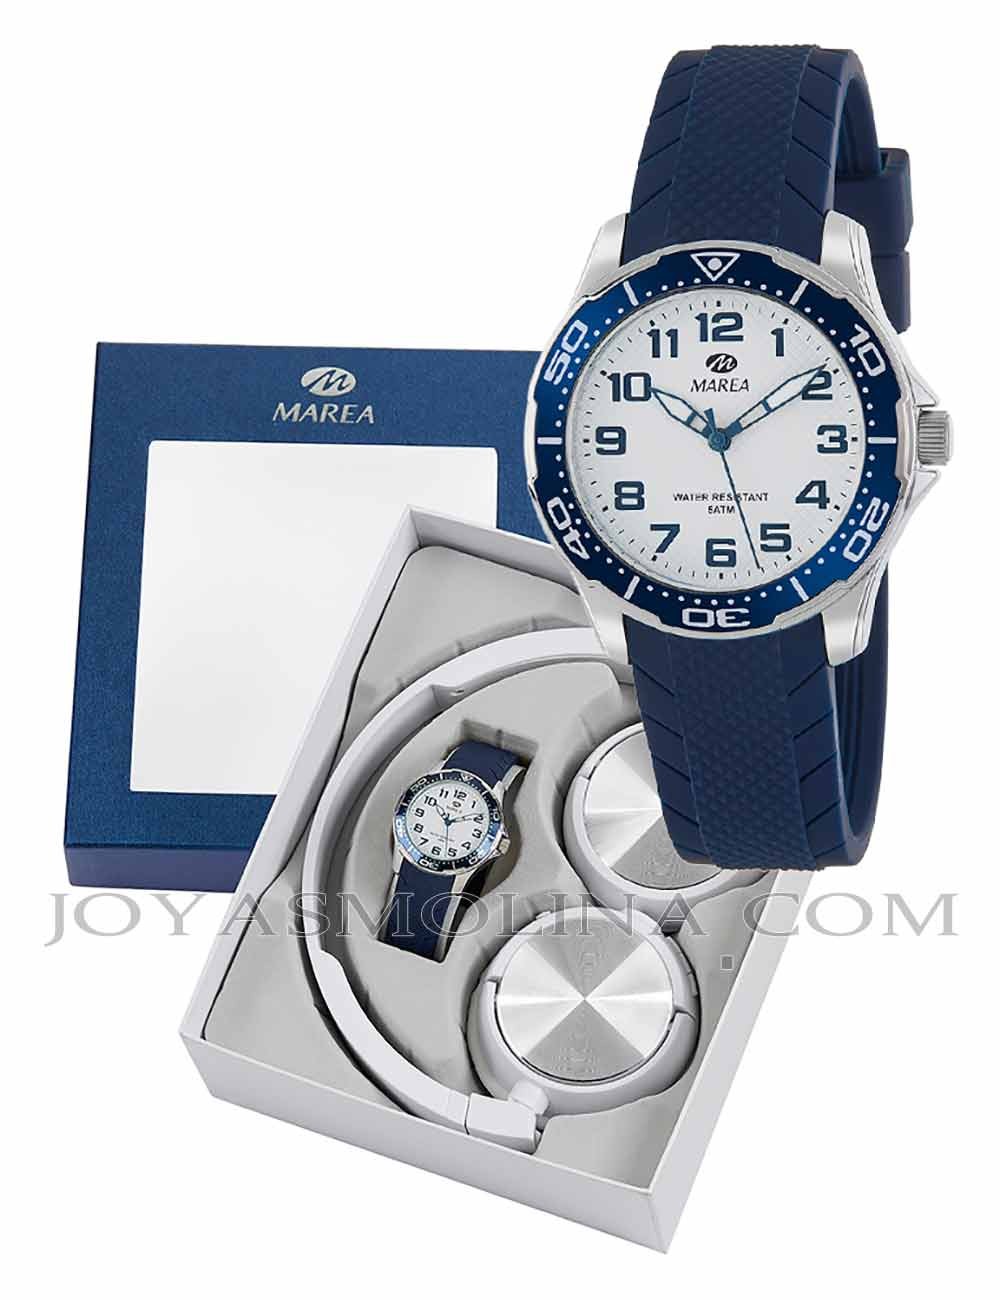 Reloj niño Marea azul y blanco con regalo